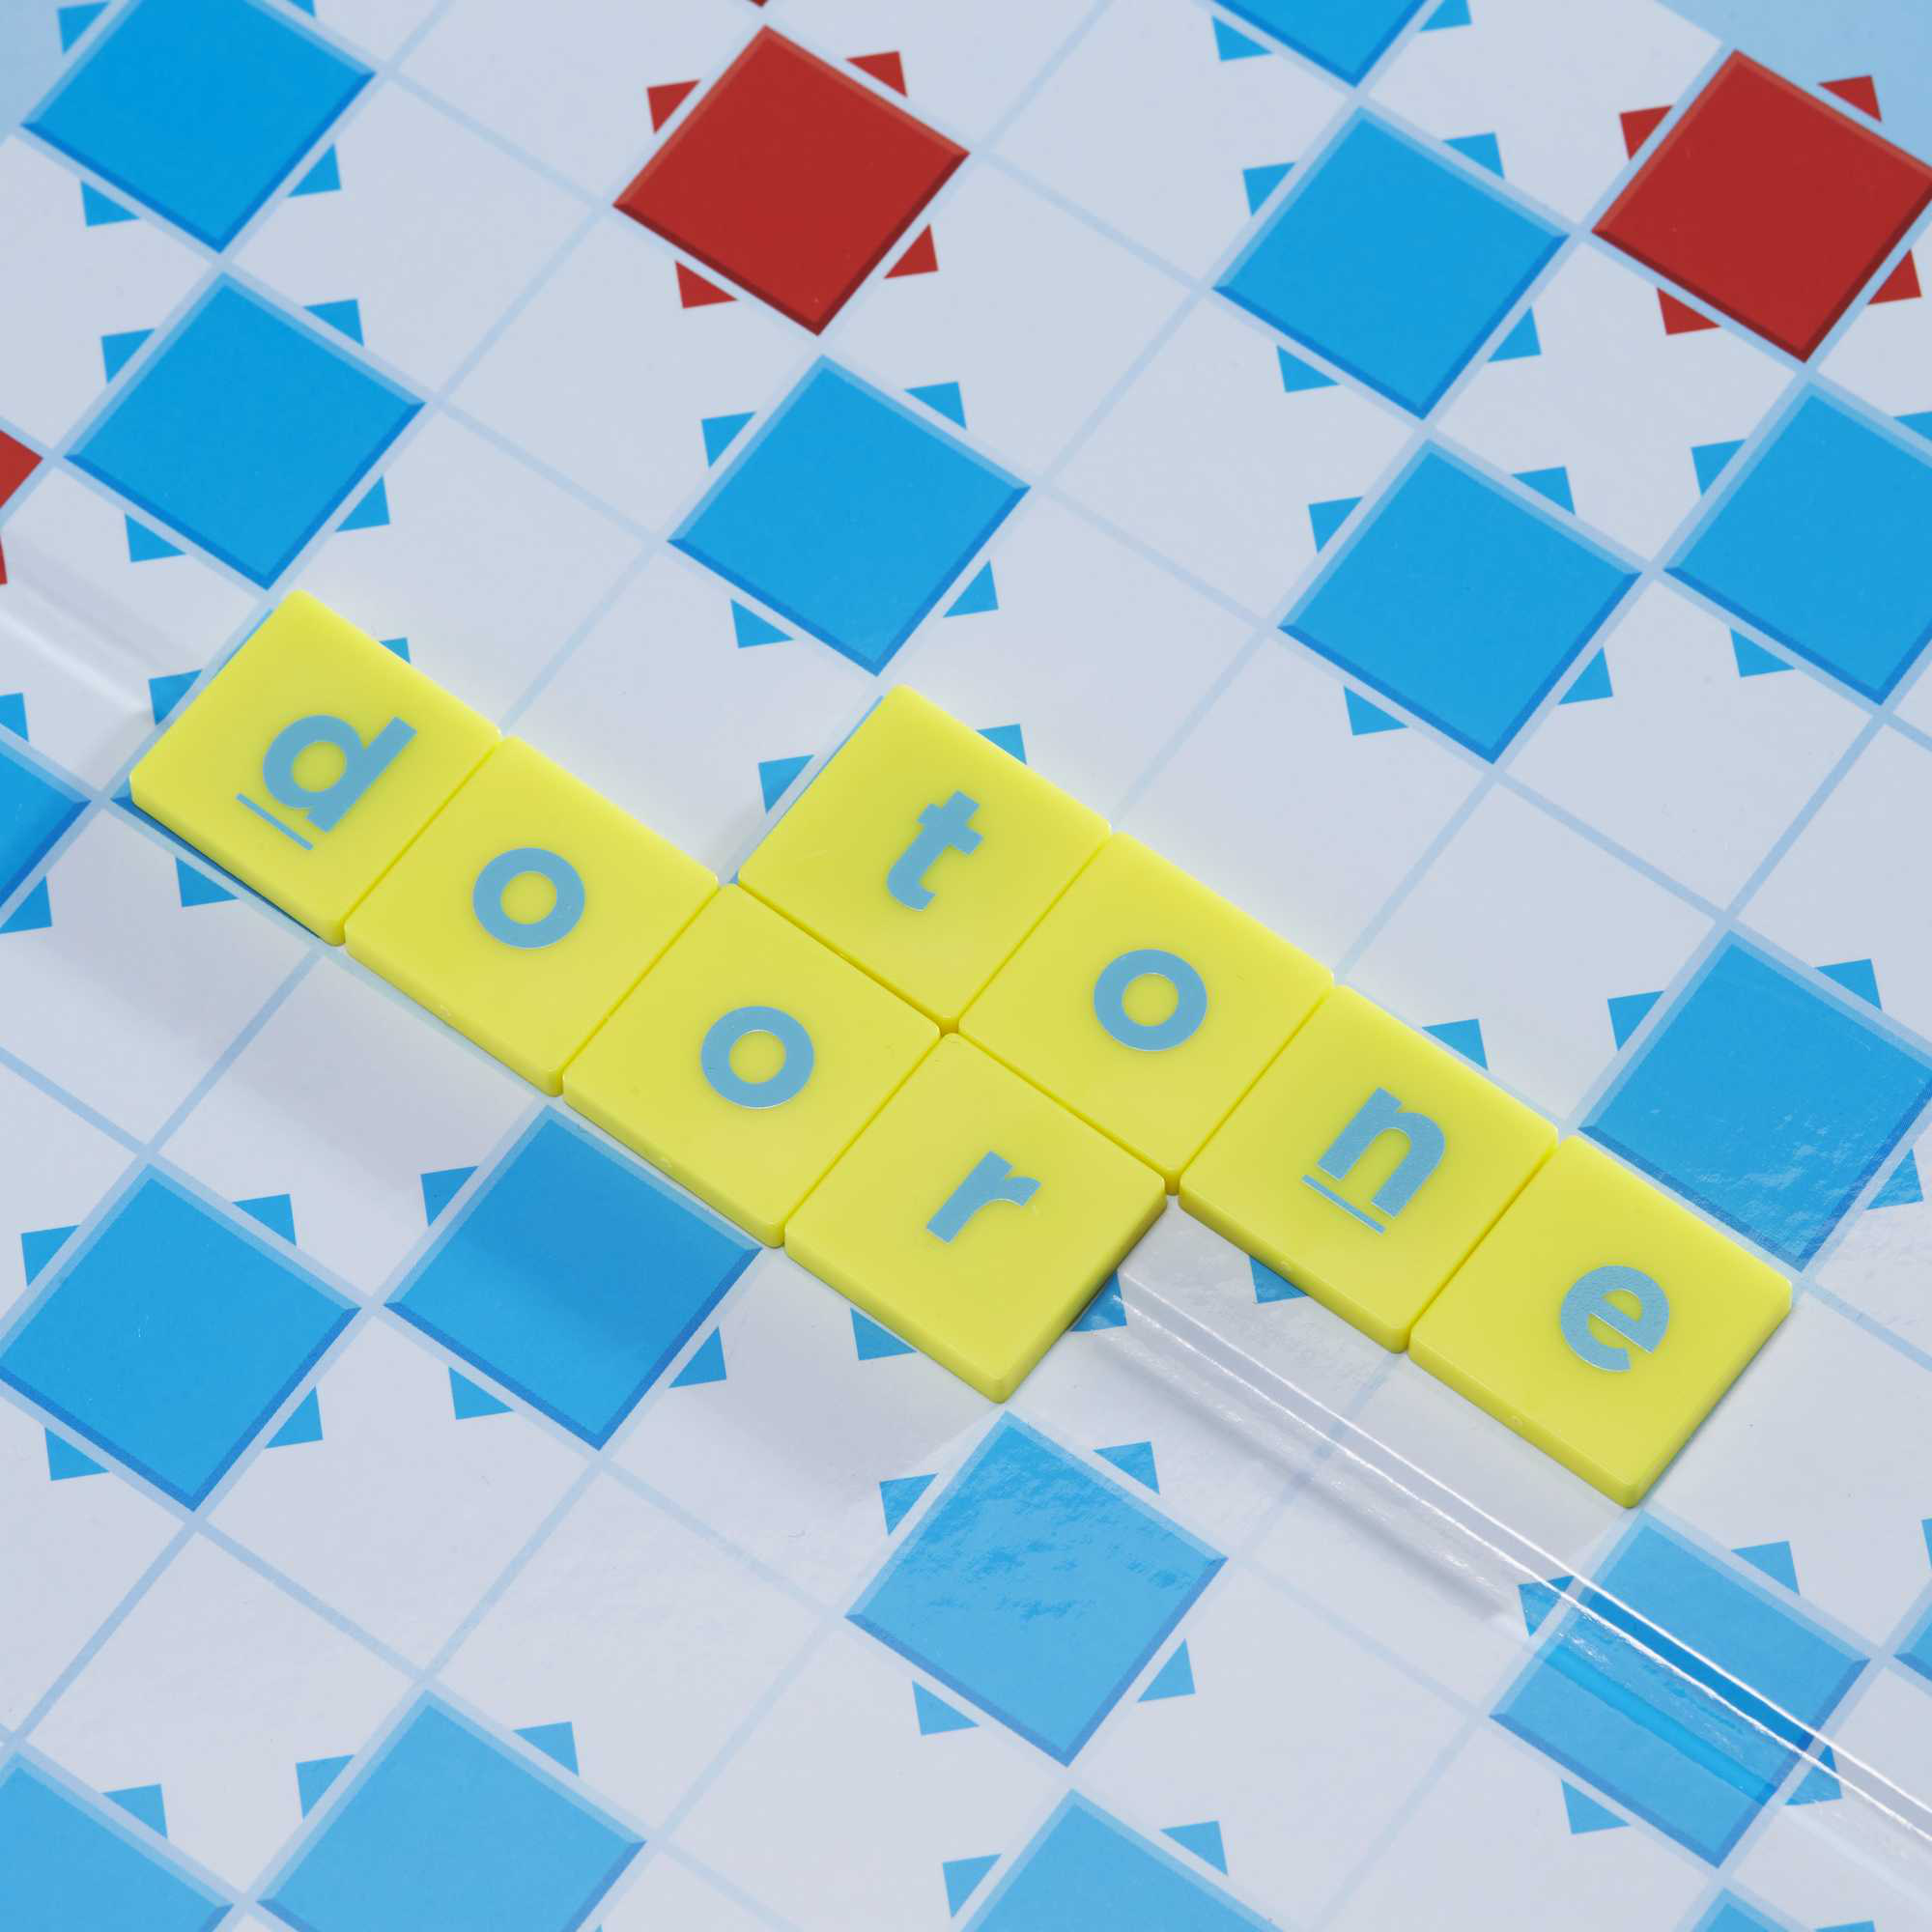 Mattel games - scrabble junior disney, il gioco da tavolo delle parole crociate con immagini dei personaggi disney, per bambini 6+ anni, hfk22 - MATTEL GAMES